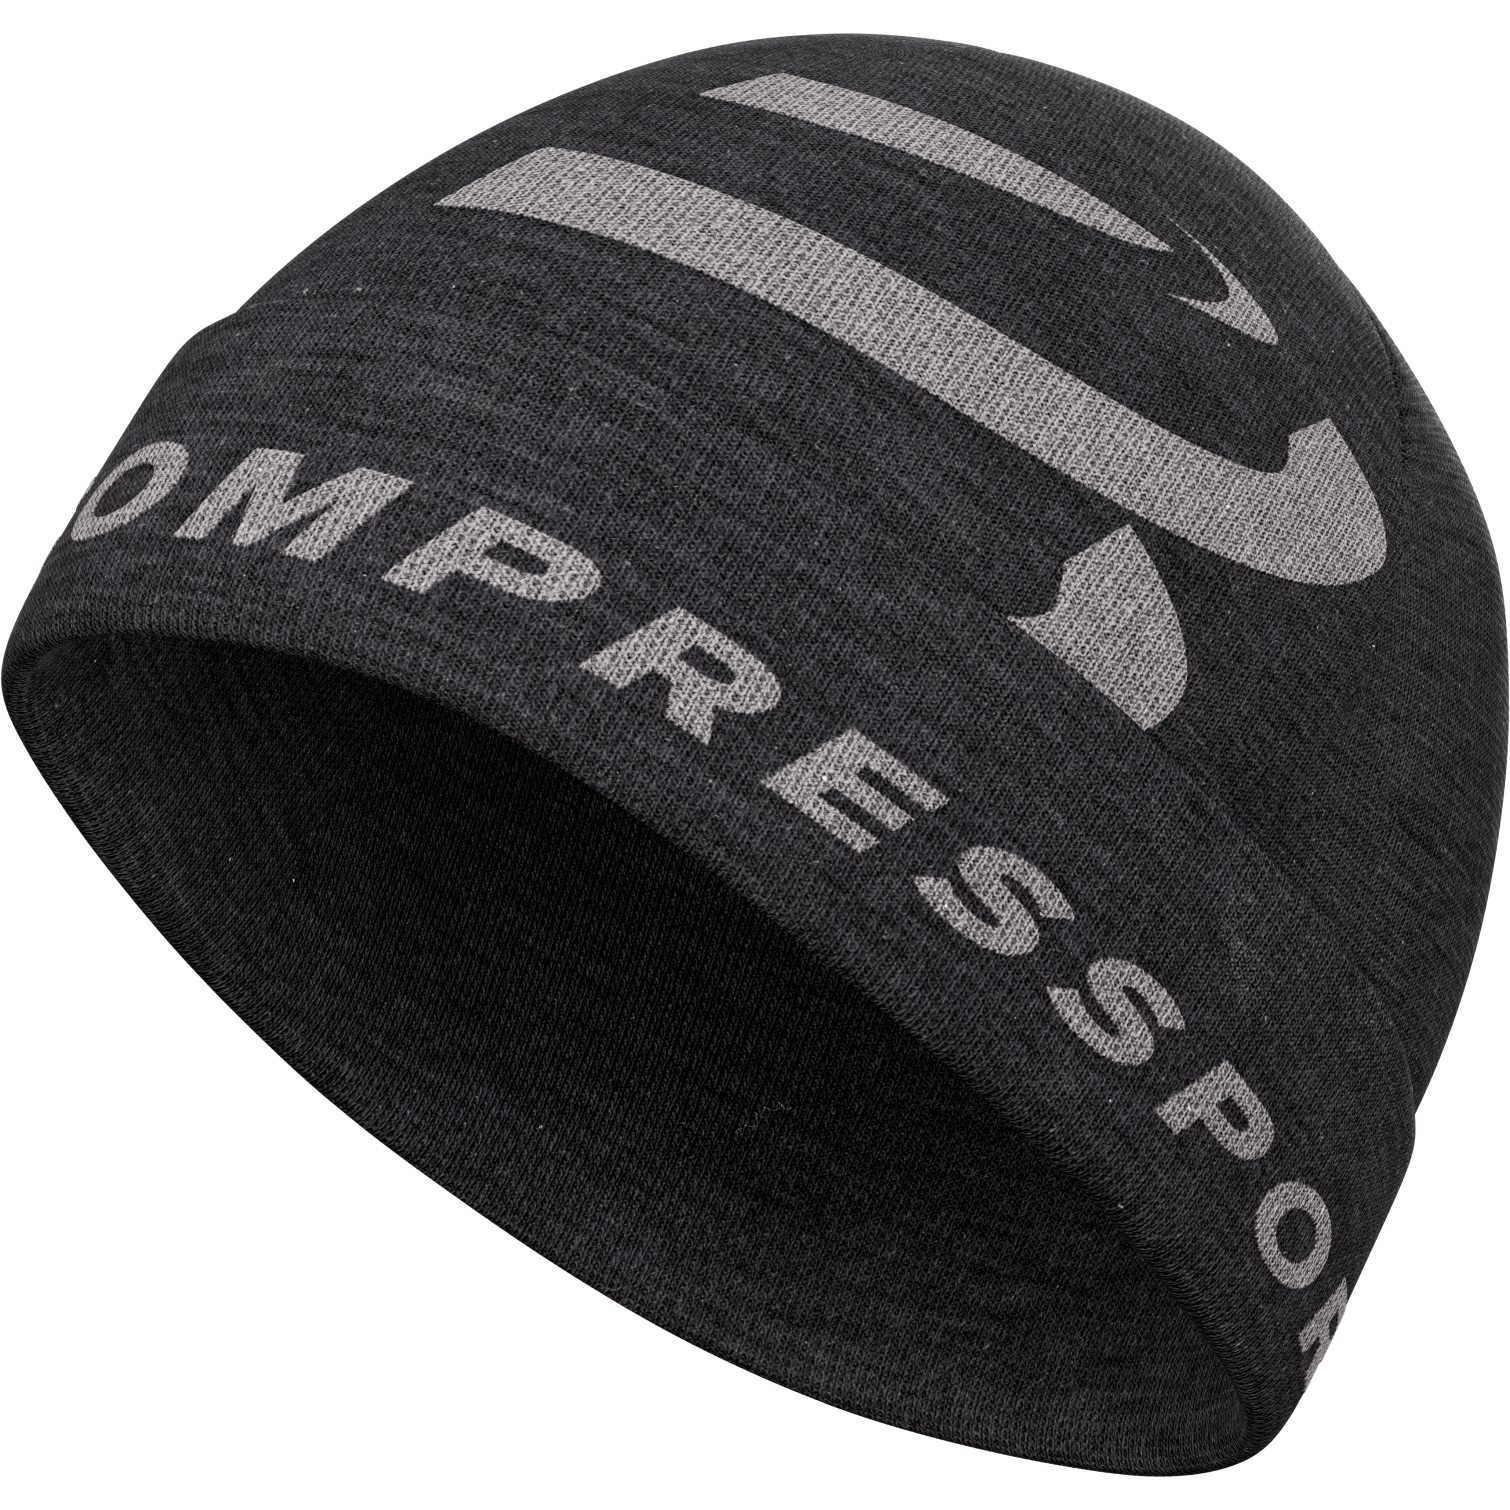 Productfoto van Compressport Casual Muts - asphalte black